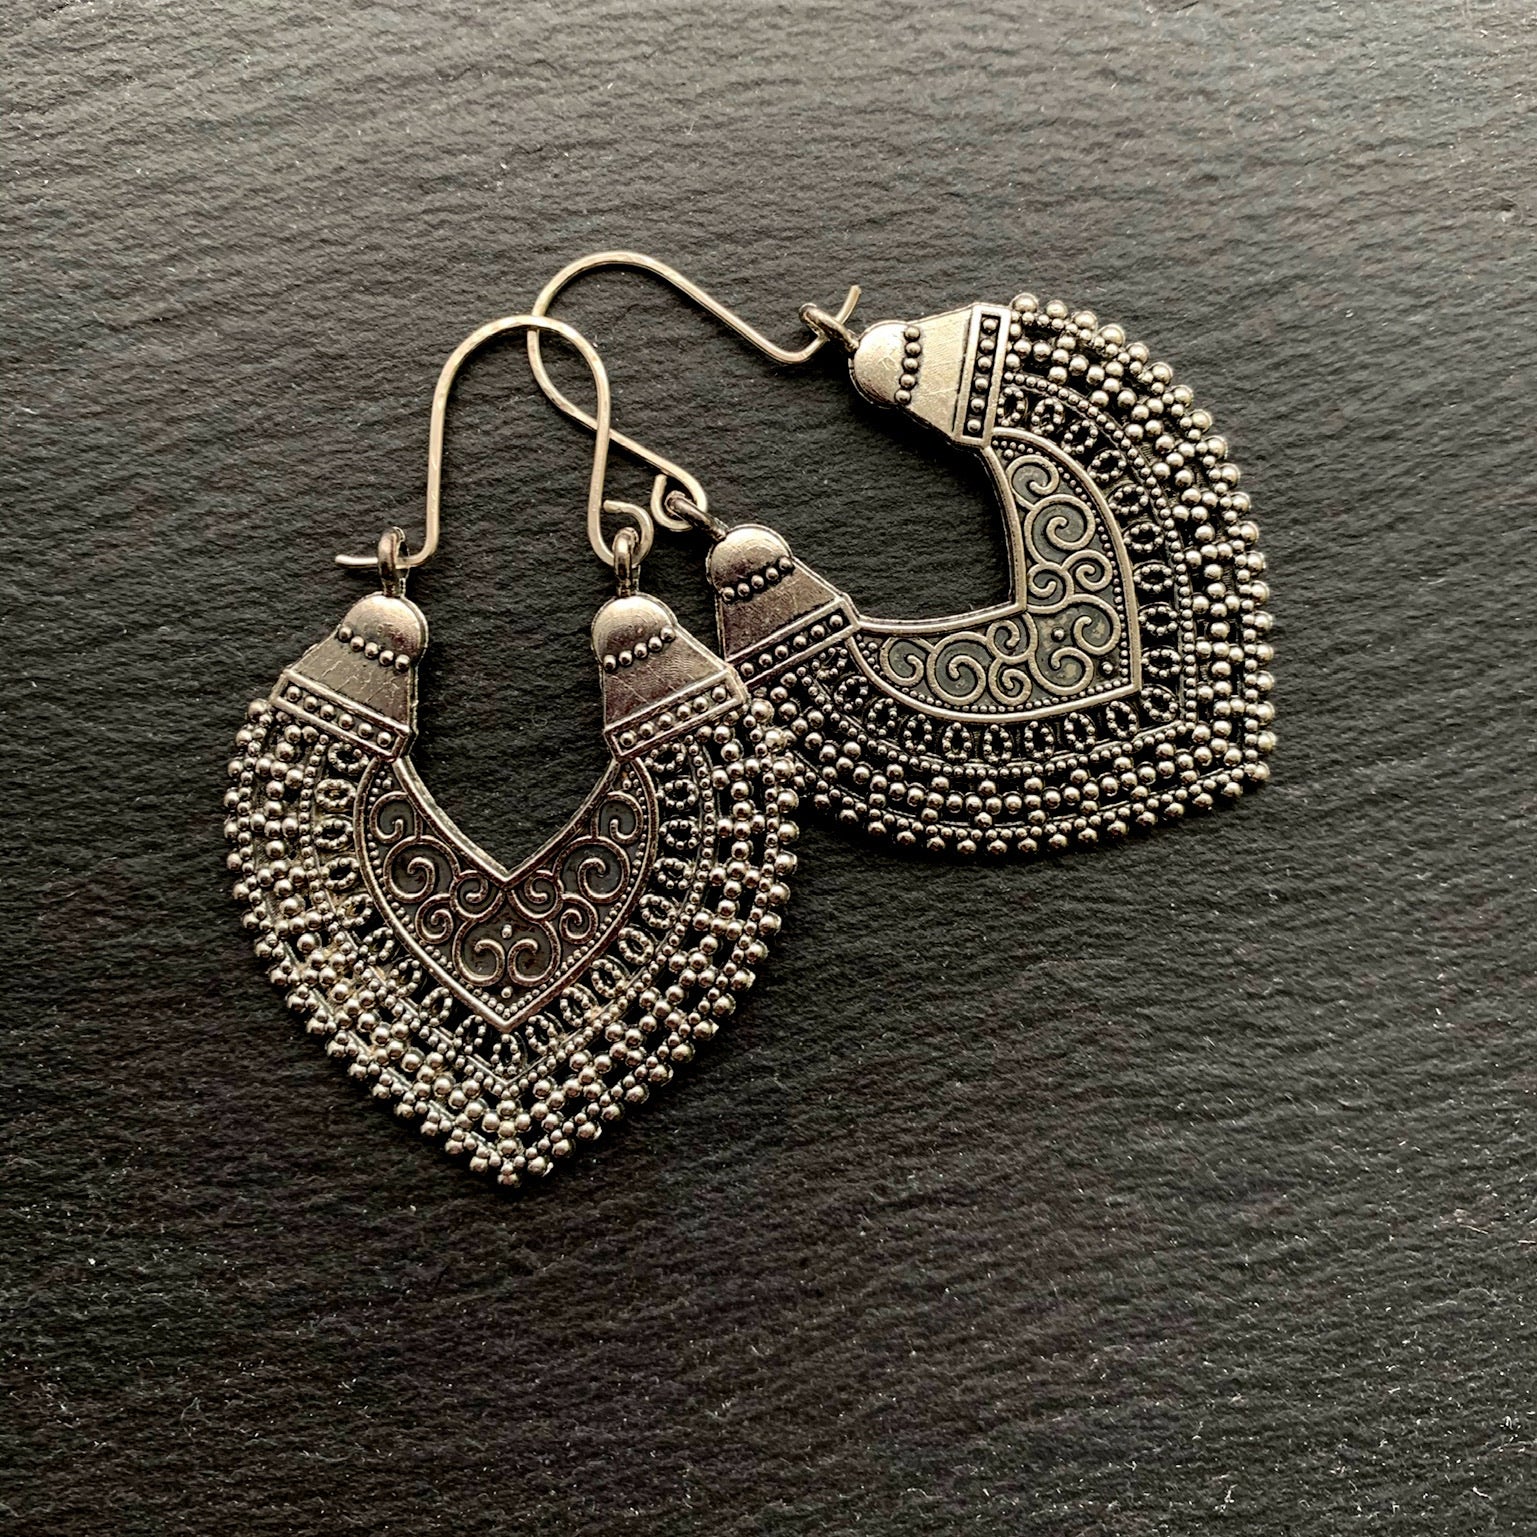 Vintage Tribal Sterling Silver Hoop Earrings, Ethnic Boho Jewelry